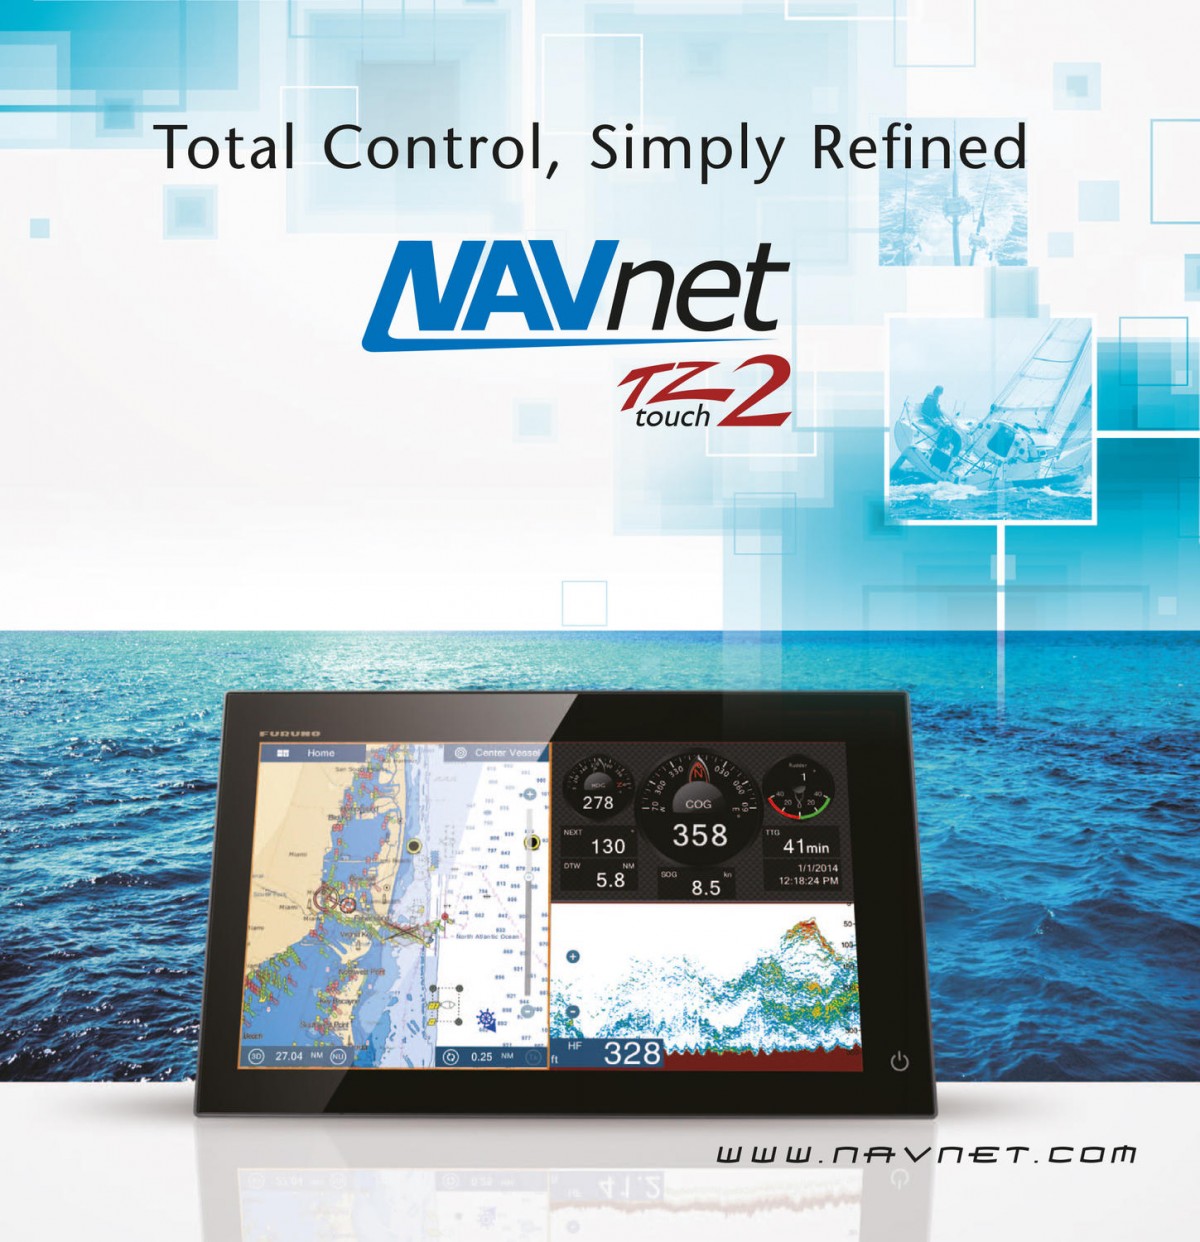 NavNet TZtouch2 monitoiminäyttö navigointiin on julkaistu